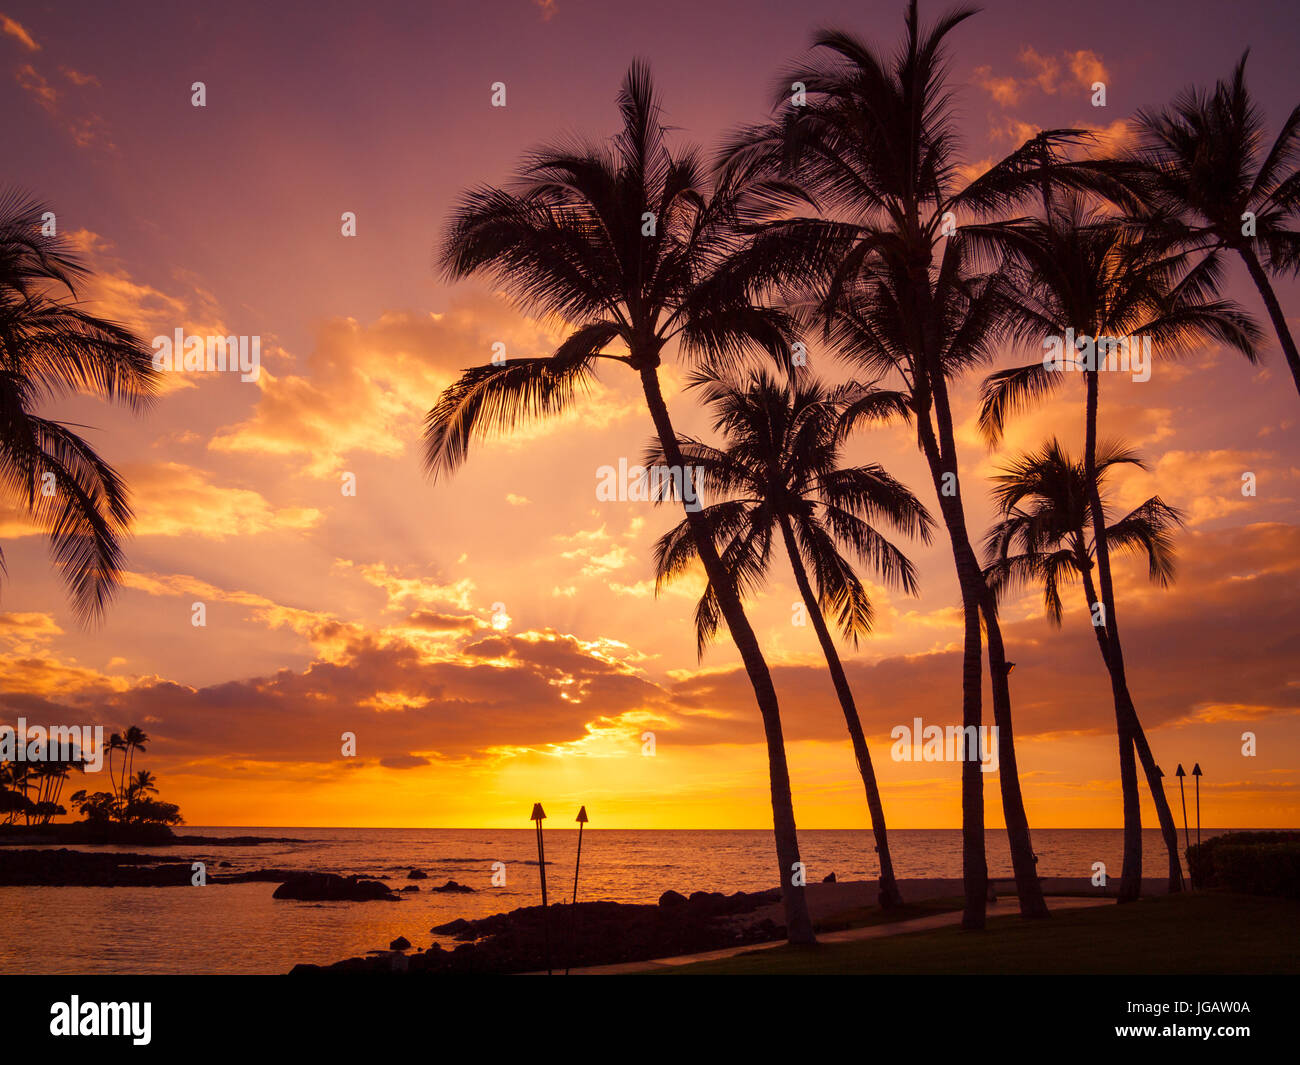 Einen wunderschönen Sonnenuntergang und Silhouette Kokospalmen von Pauoa Bay im Fairmont Orchid, Kohala Coast, Hawaii gesehen. Stockfoto